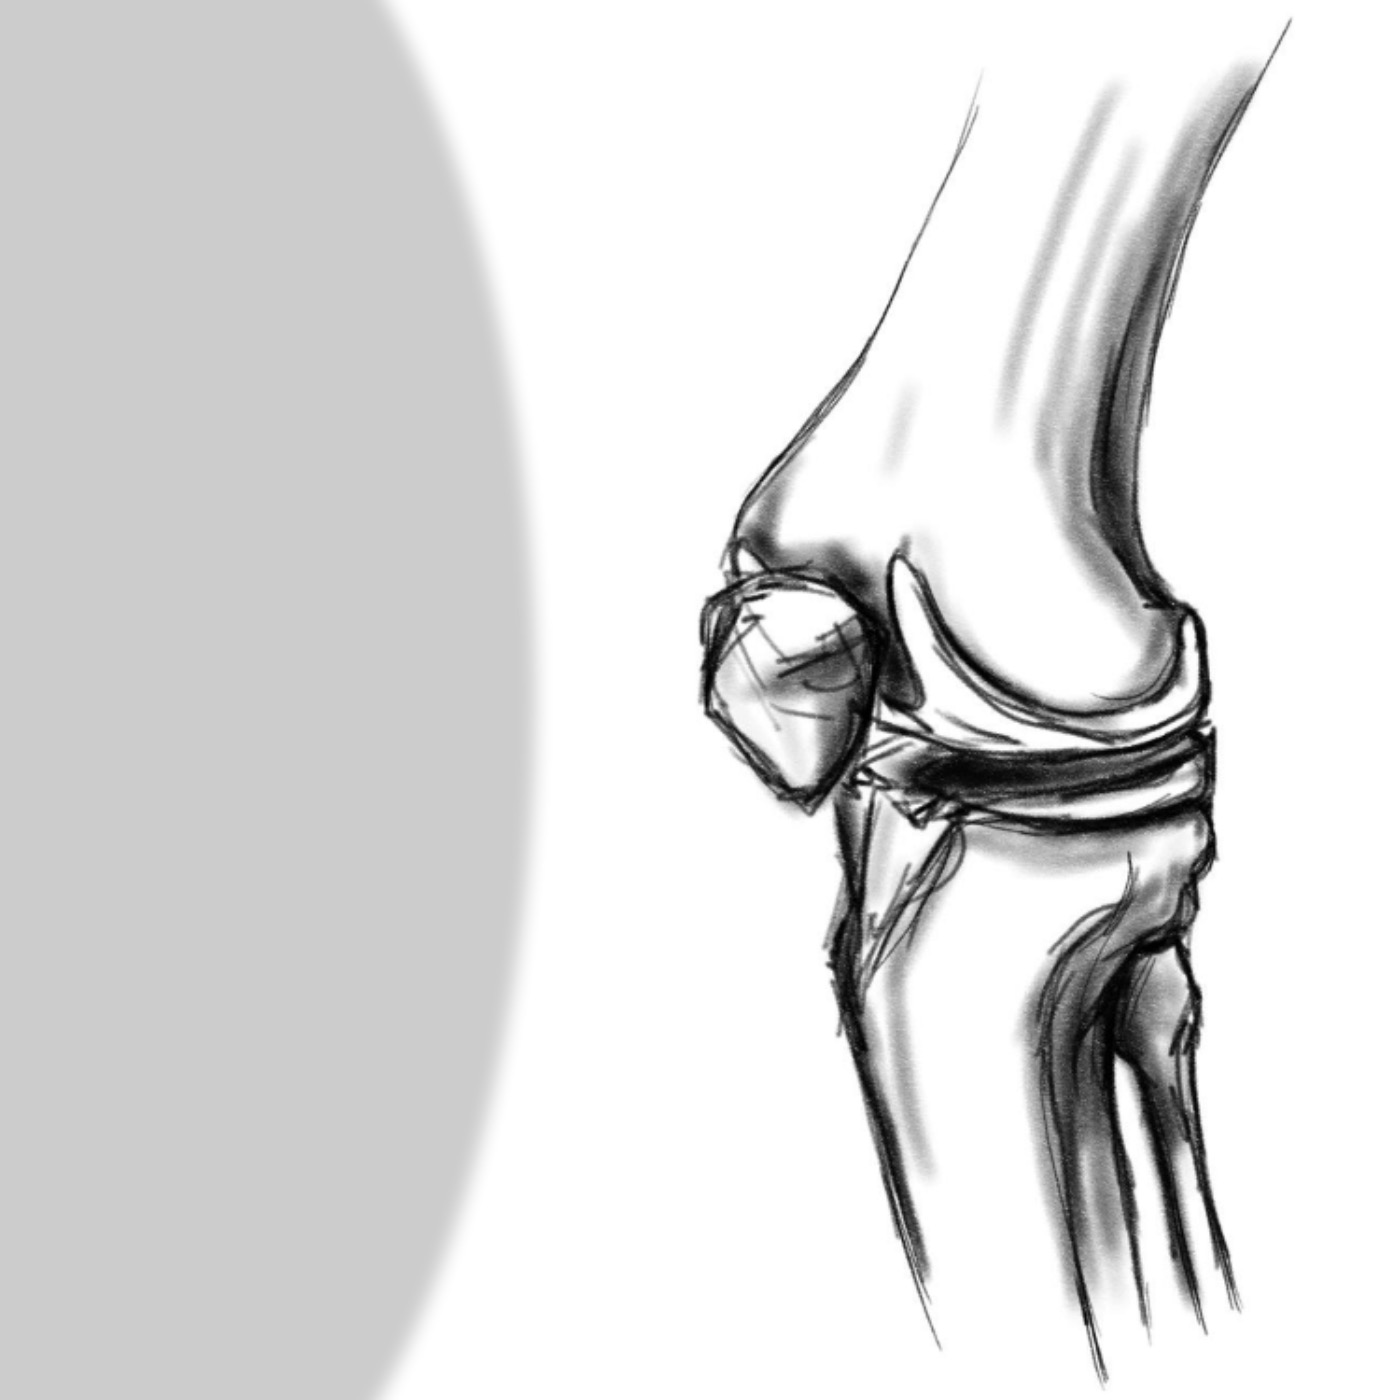 Kniegelenk | Allgemein und knöcherne Strukturen